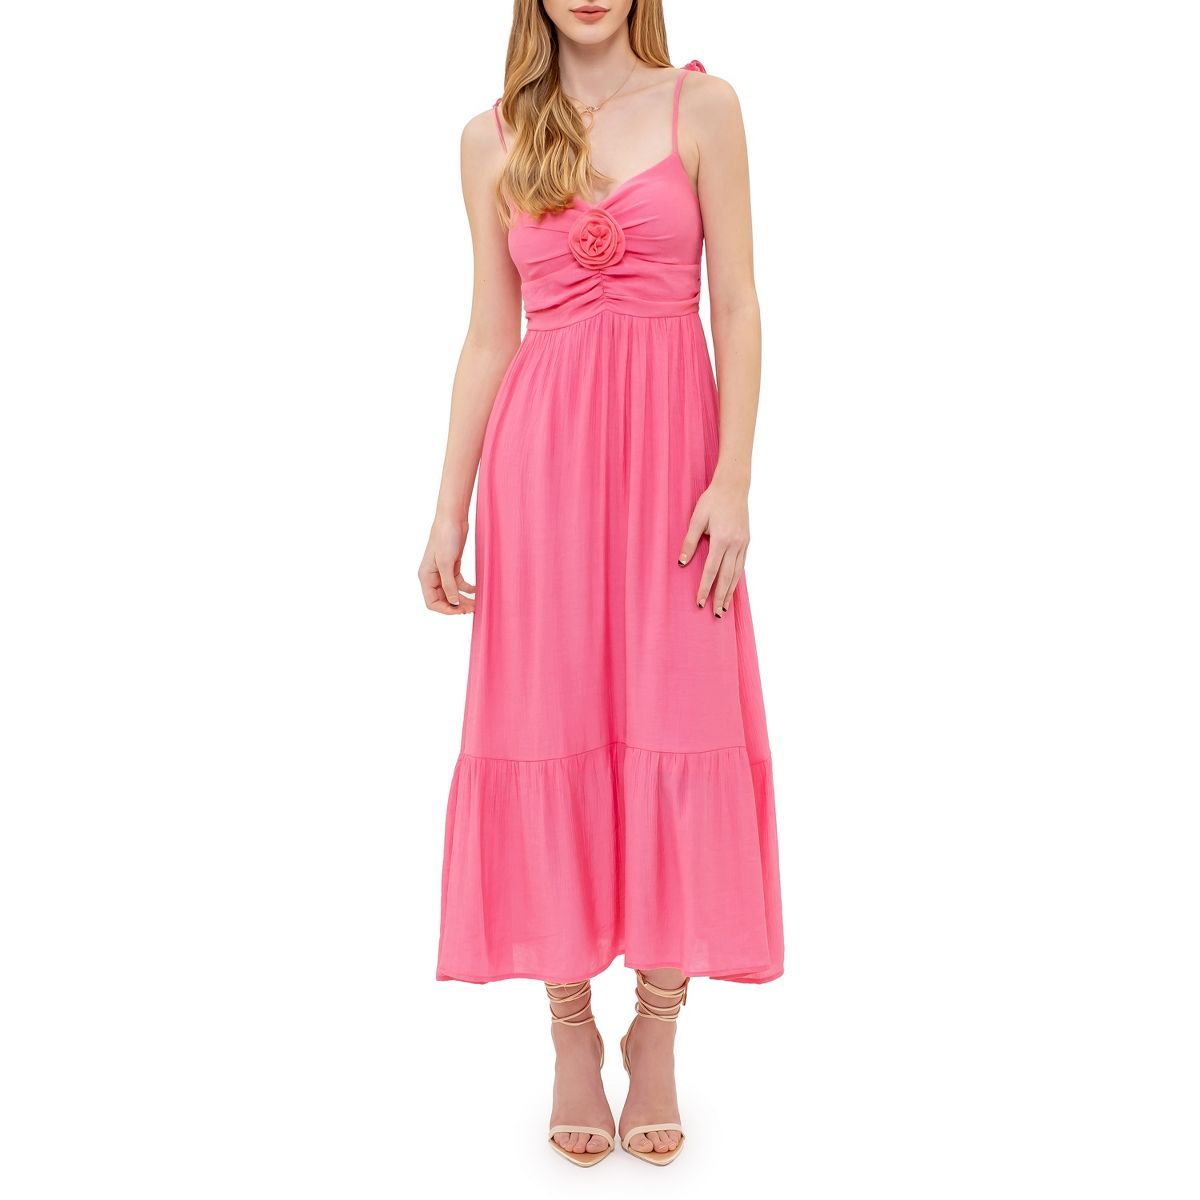 August Sky Women's Rosette Sweetheart Midi Dress, Small, Light Fuchsia | Target